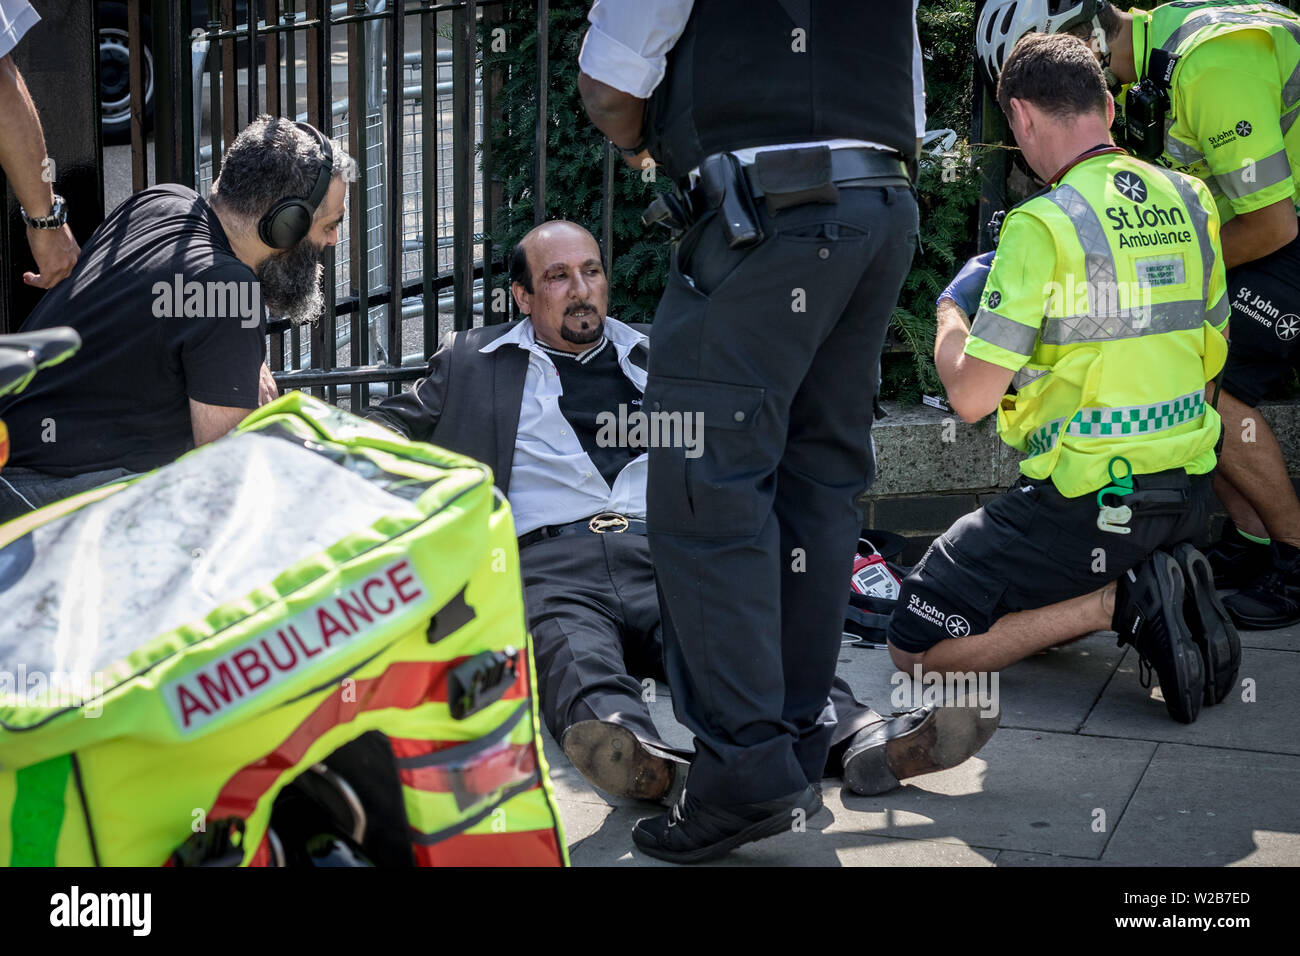 Sanitäter und Polizei kümmern sich um eine verletzte Saudische Prediger nach einem heftigen Auseinandersetzung während einer hitzigen Debatte nahe dem Eingang zum Speaker's Corner. Die Predigt, die Debatten und Predigten an der Speakers' Corner, das öffentliche Sprechen nord-östlichen Ecke des Hyde Park. London, Großbritannien Stockfoto